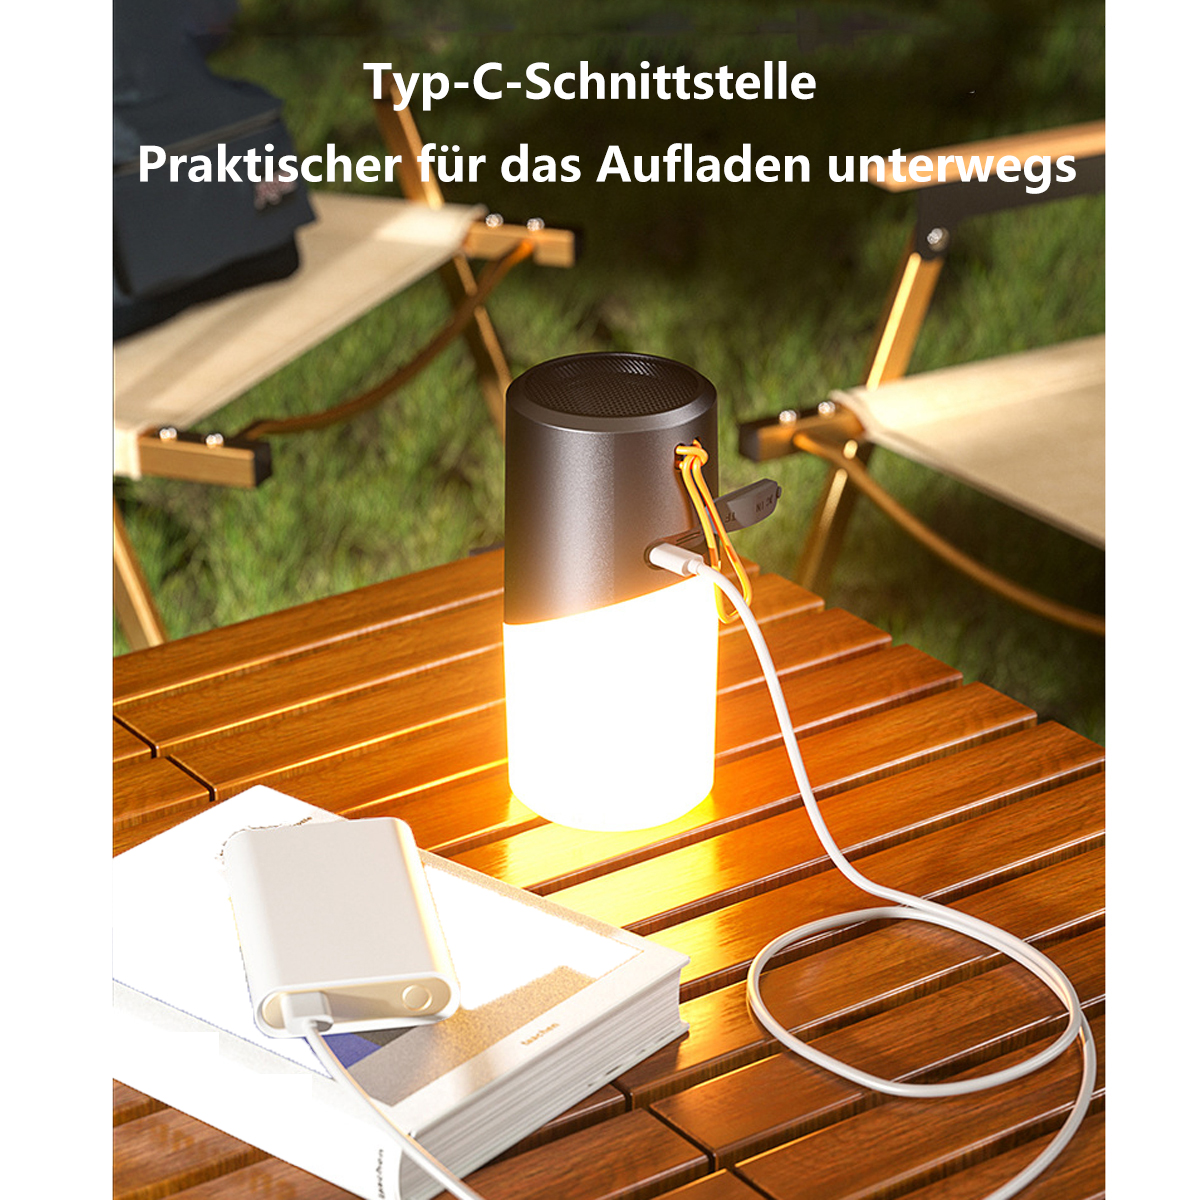 light Weiß, ambient portable speaker waterproof Wasserfest bluetooth SYNTEK Wireless Lautsprecher small Bluetooth-Lautsprecher, audio light outdoor